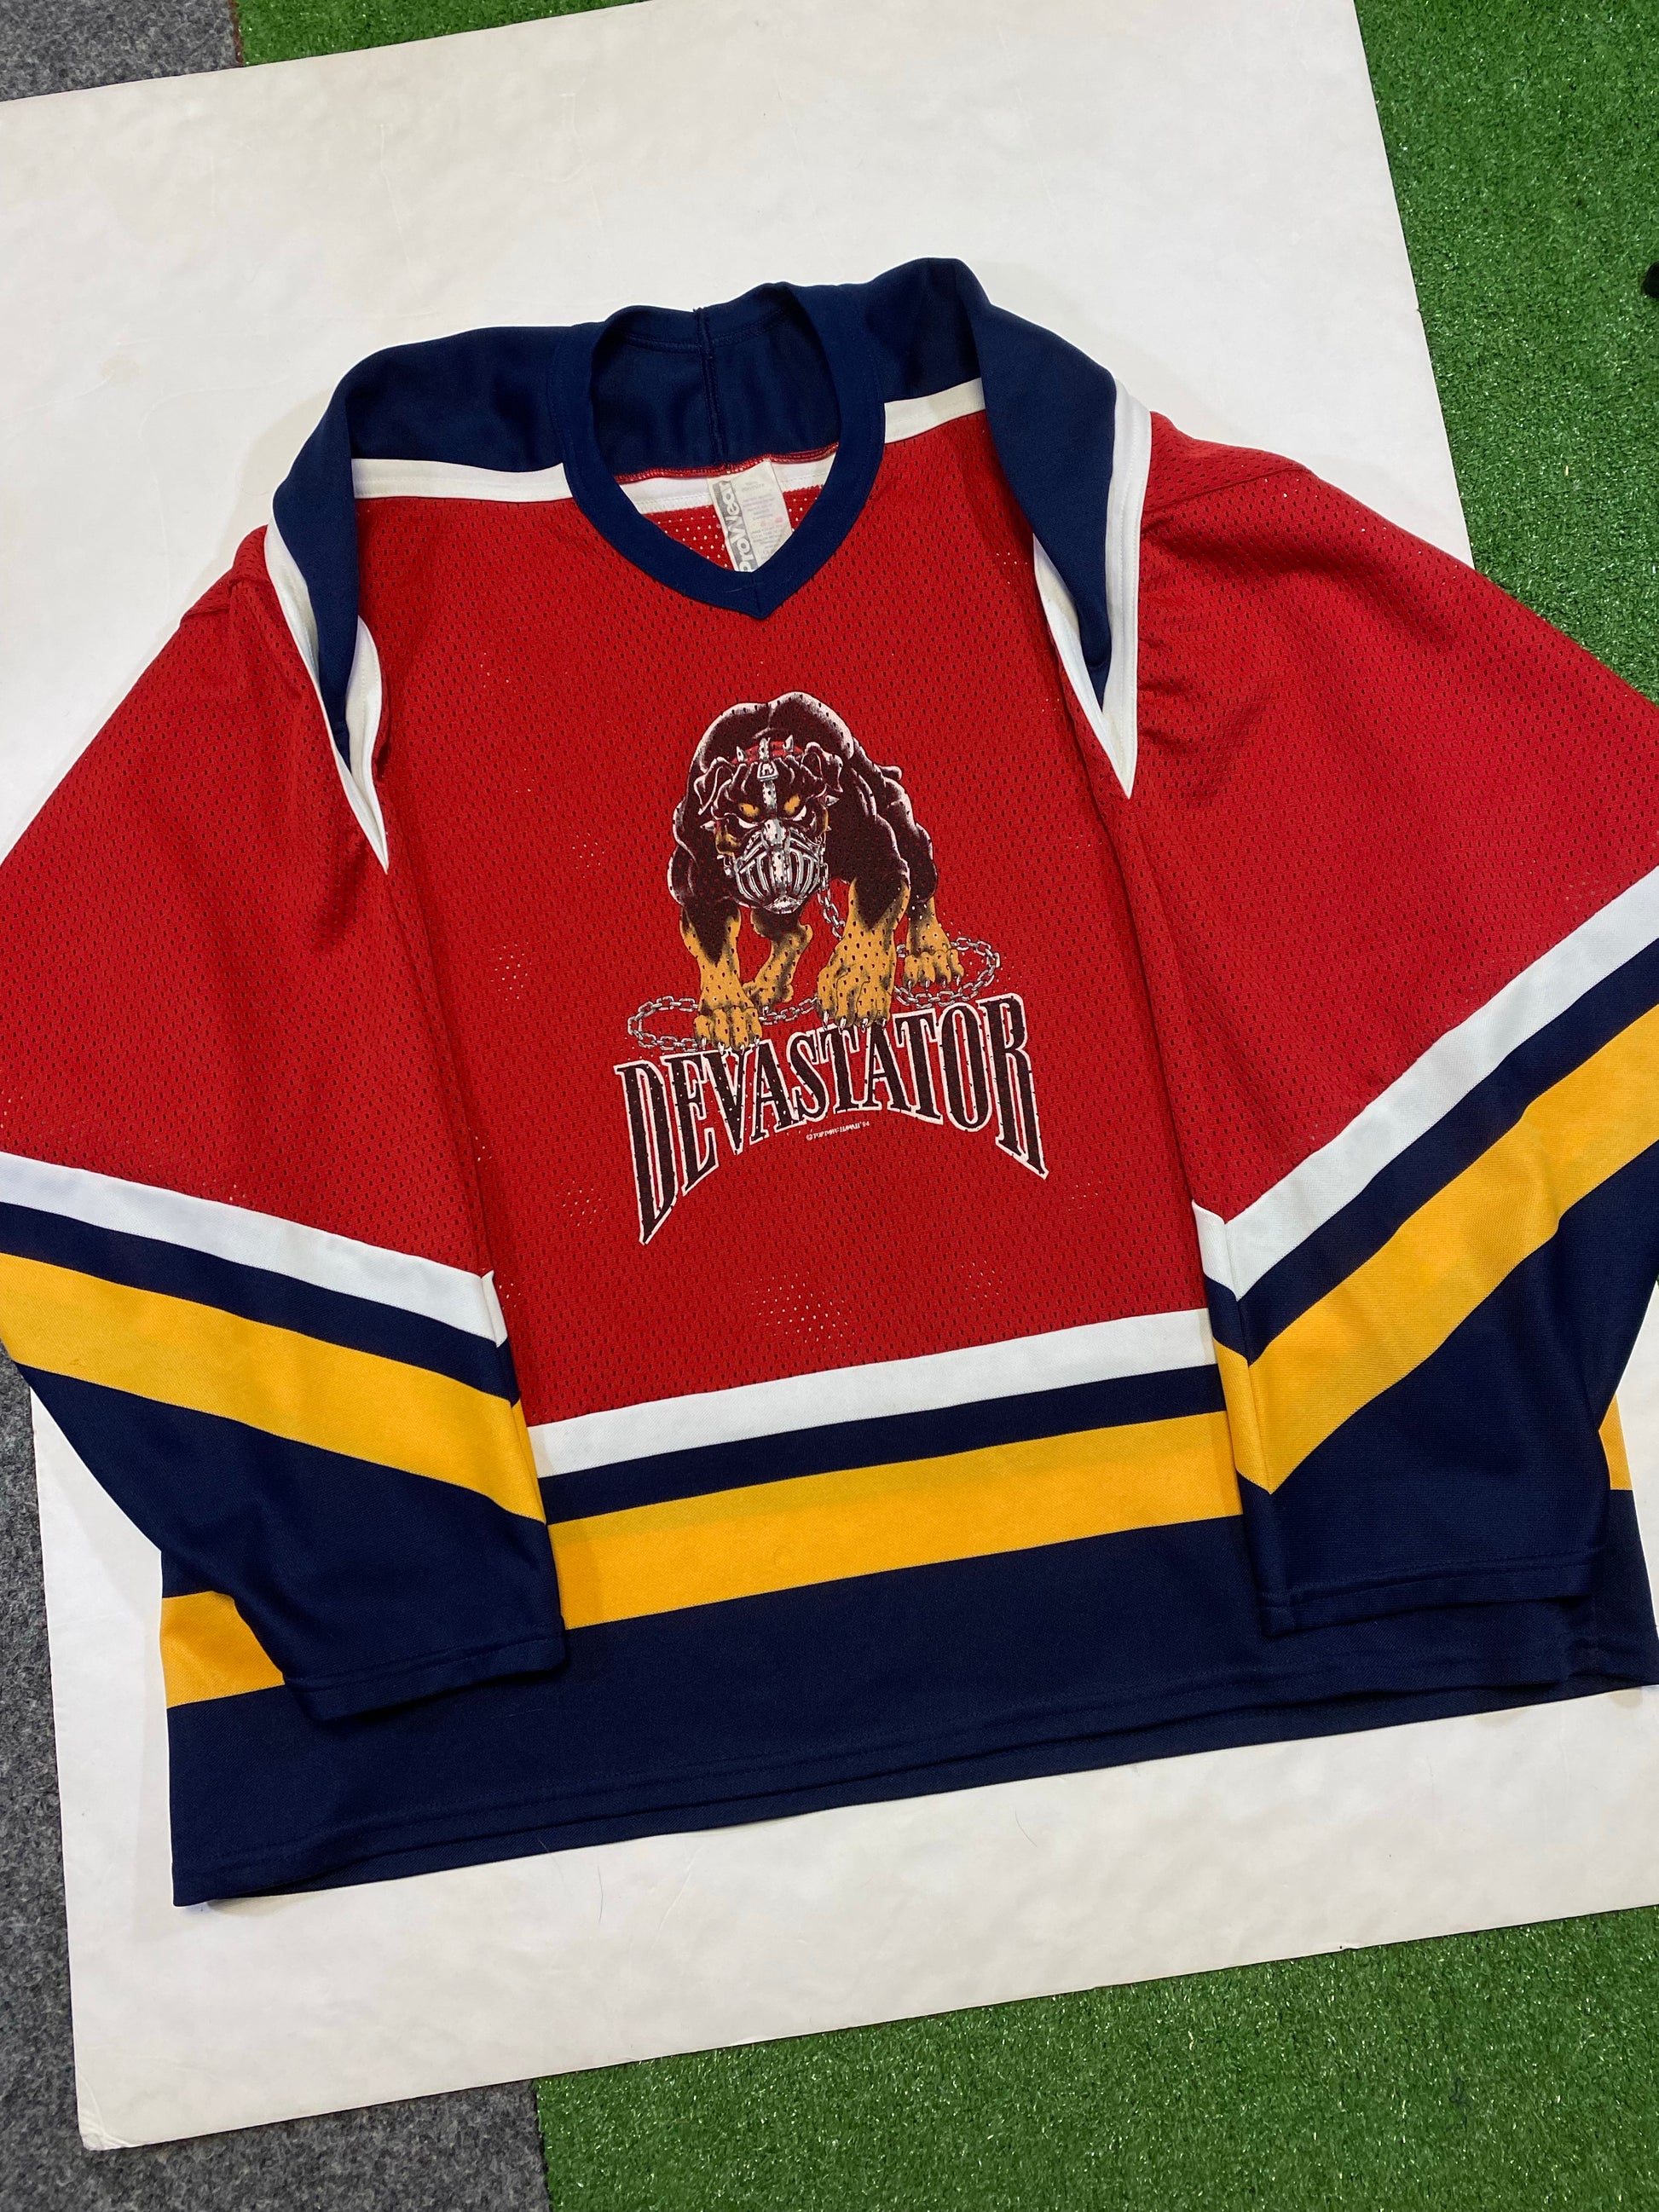 Original Florida Panthers Hockey Jersey Shirt 1990s 